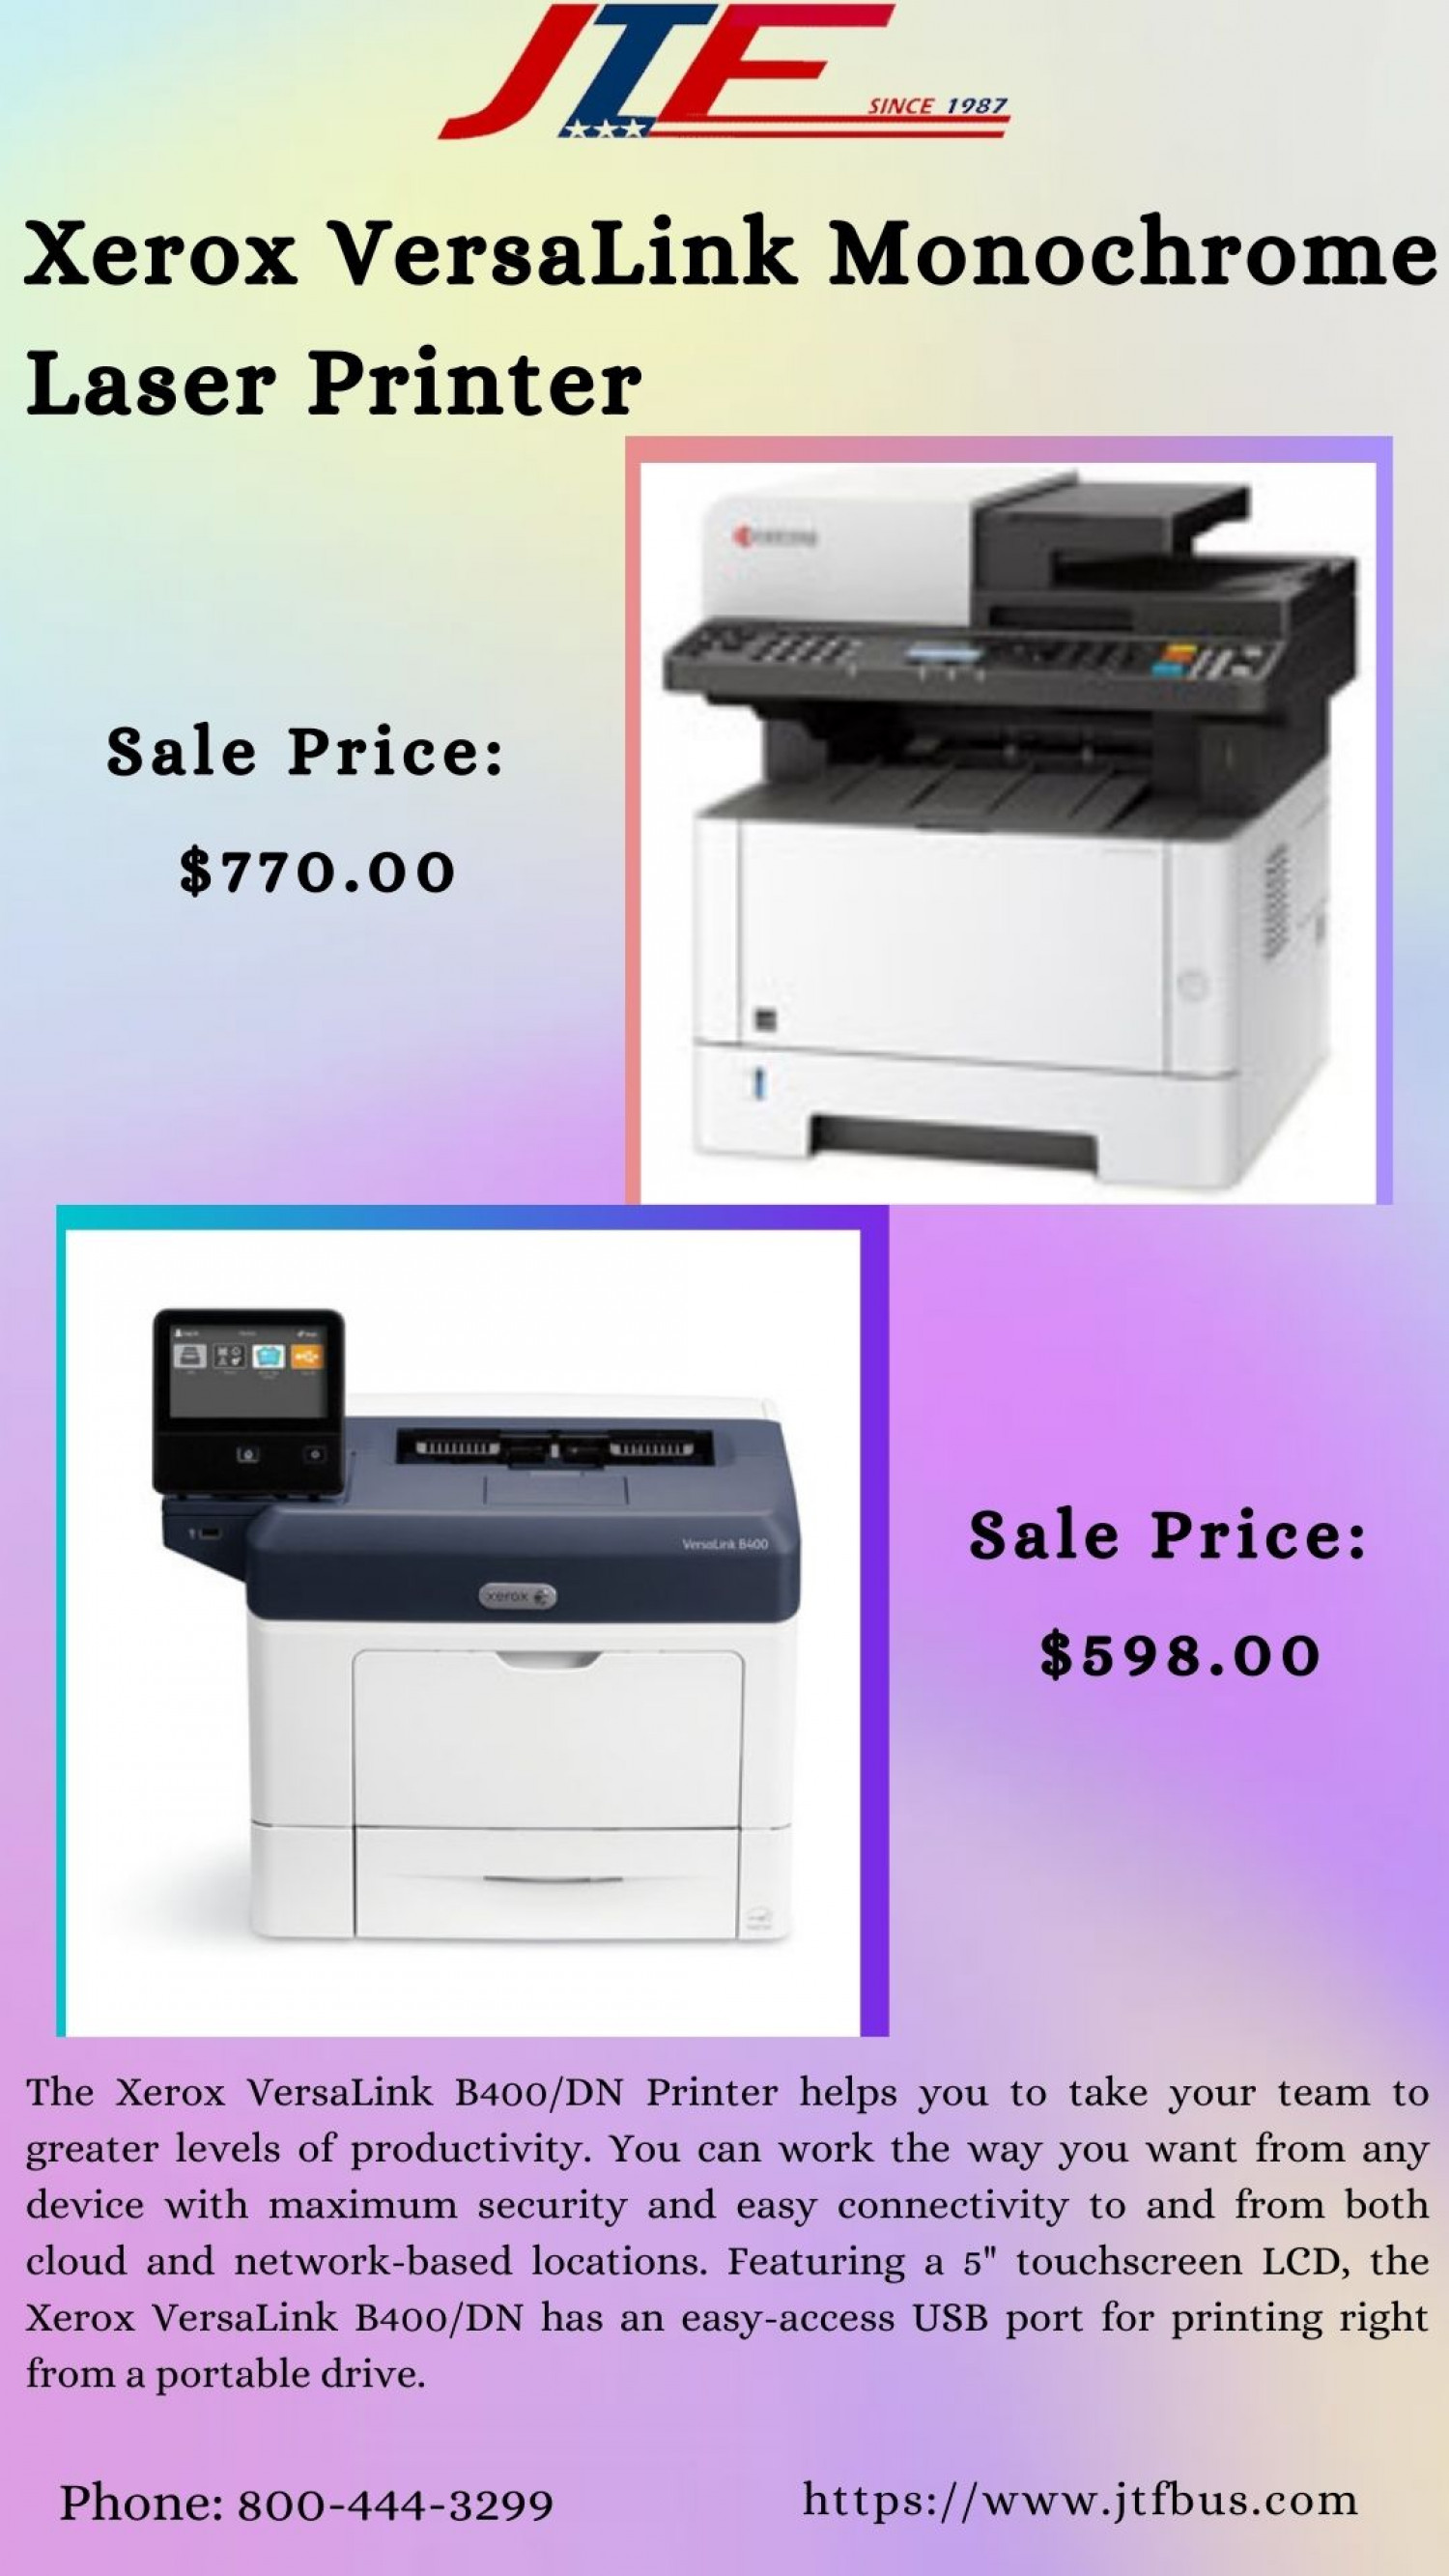 Get Xerox VersaLink Monochrome Laser Printer at JTF Business Infographic